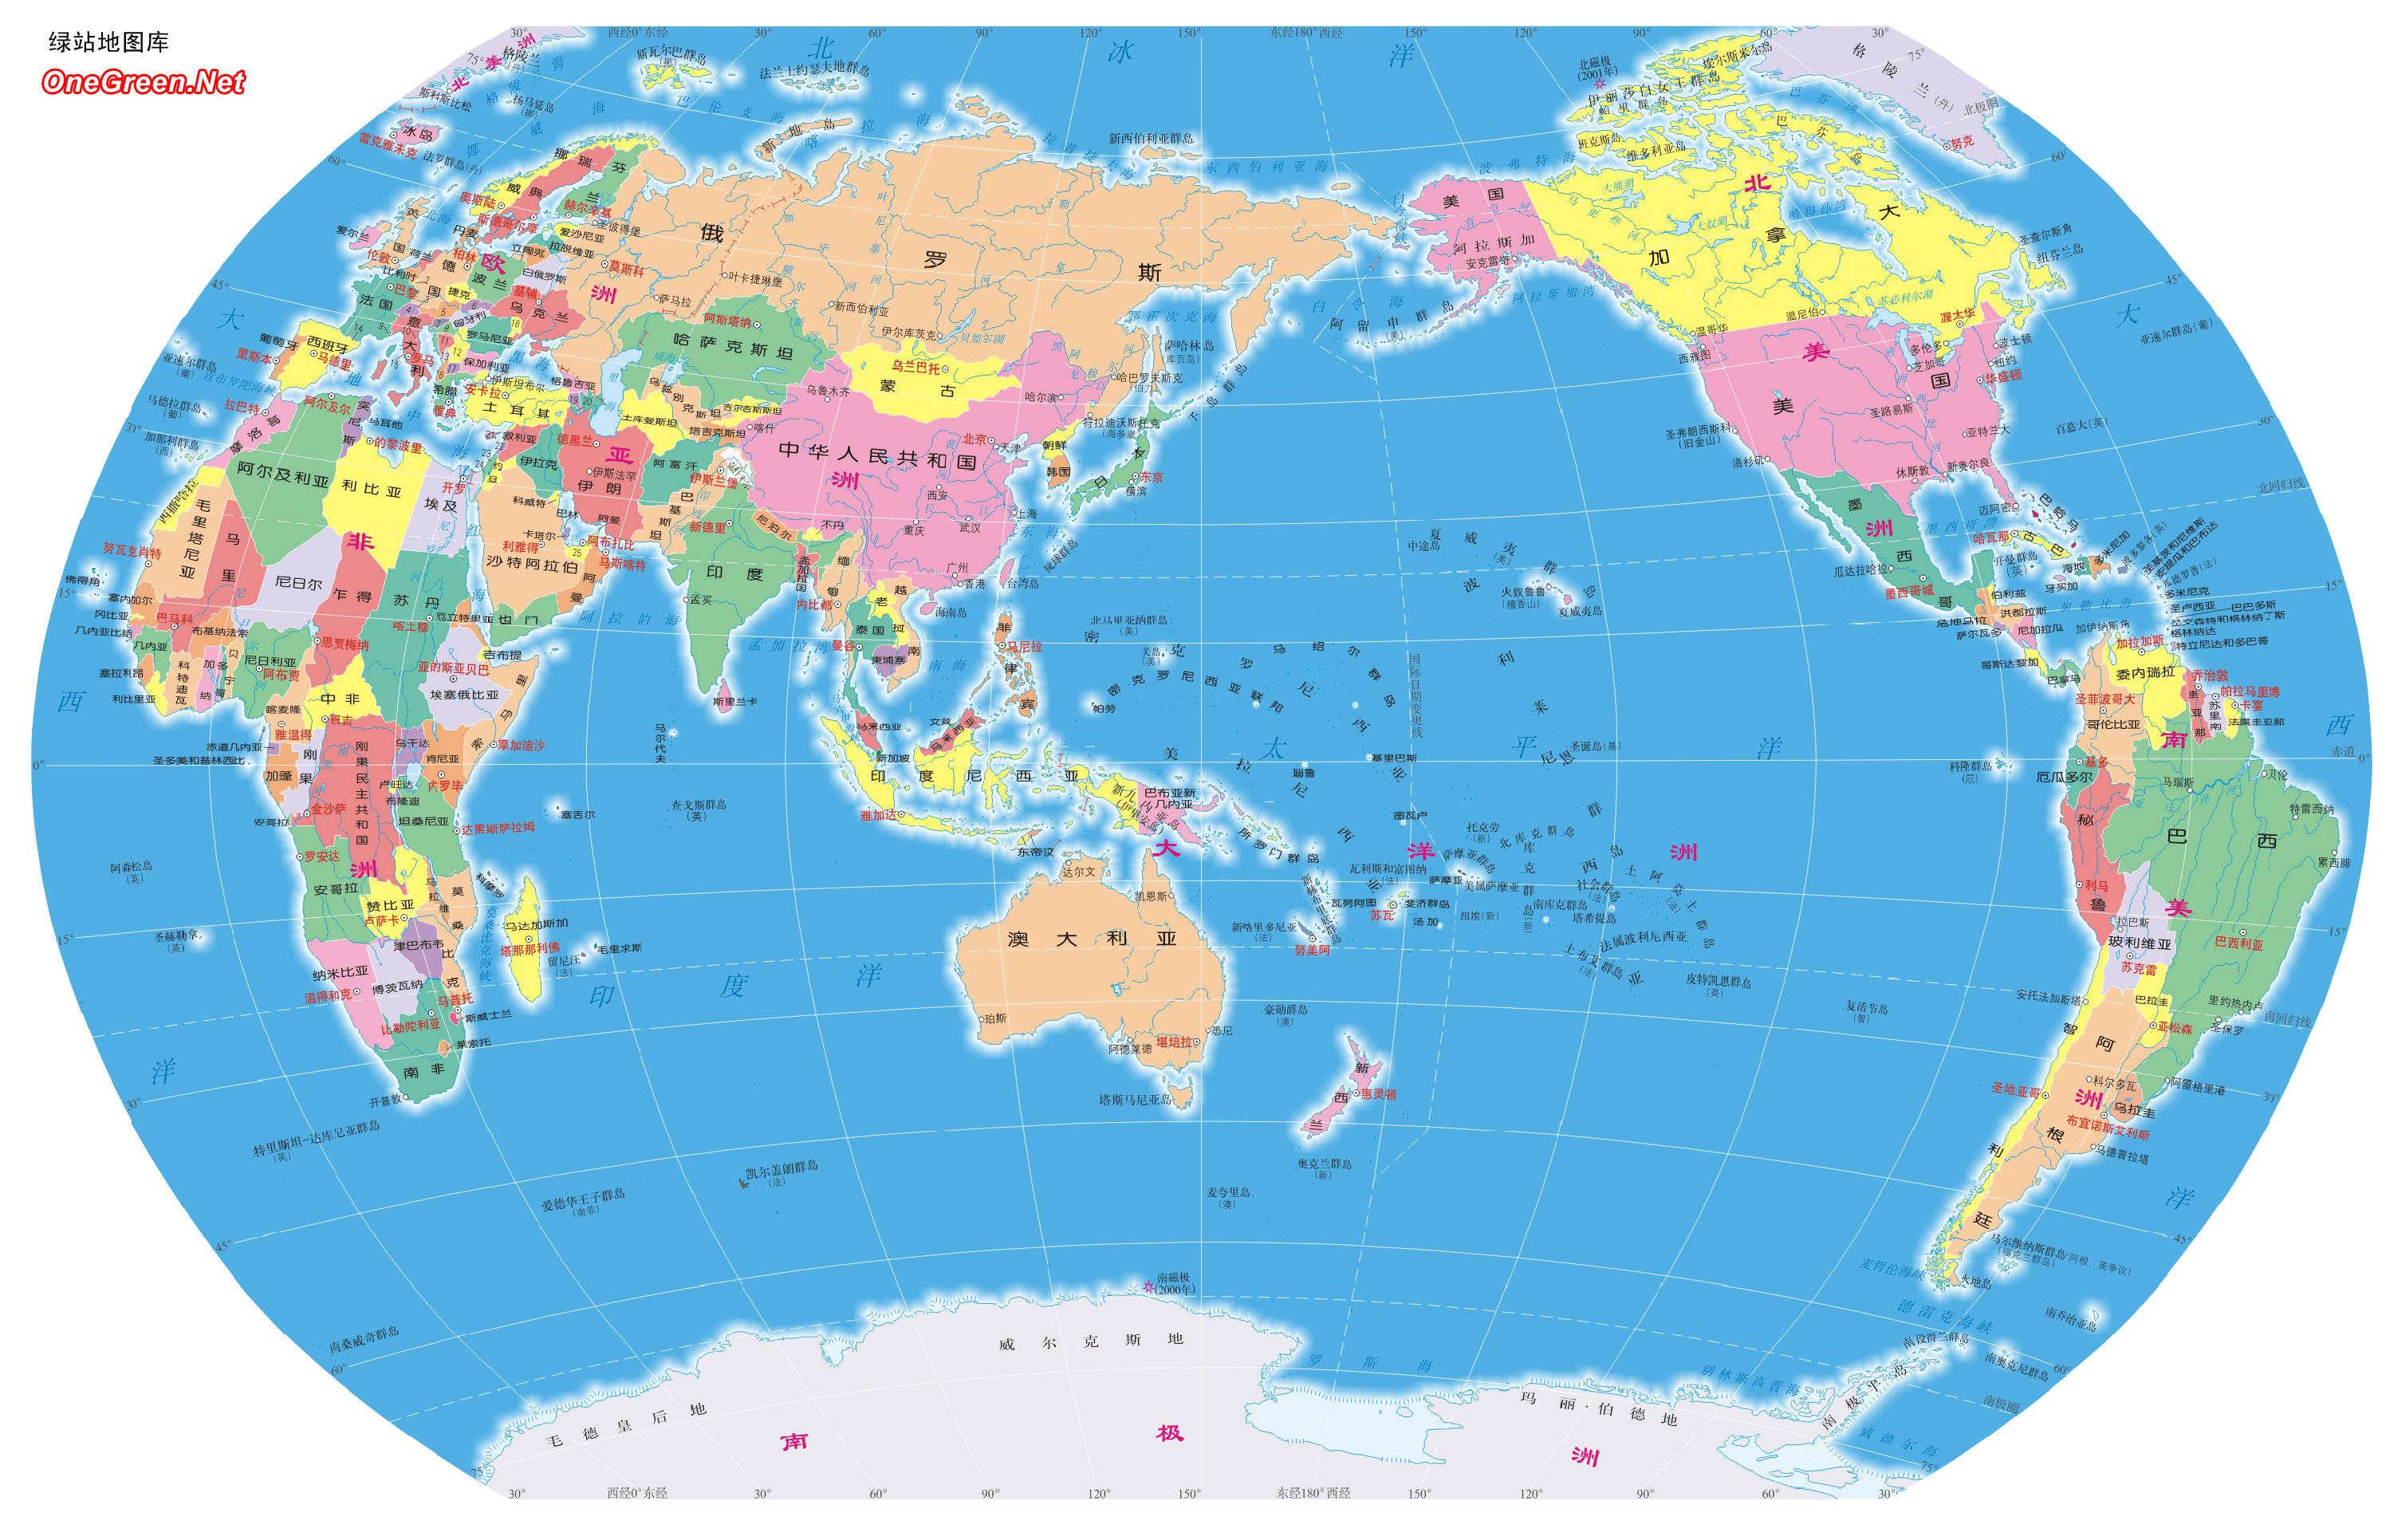 七大洲主要国家分布图图片